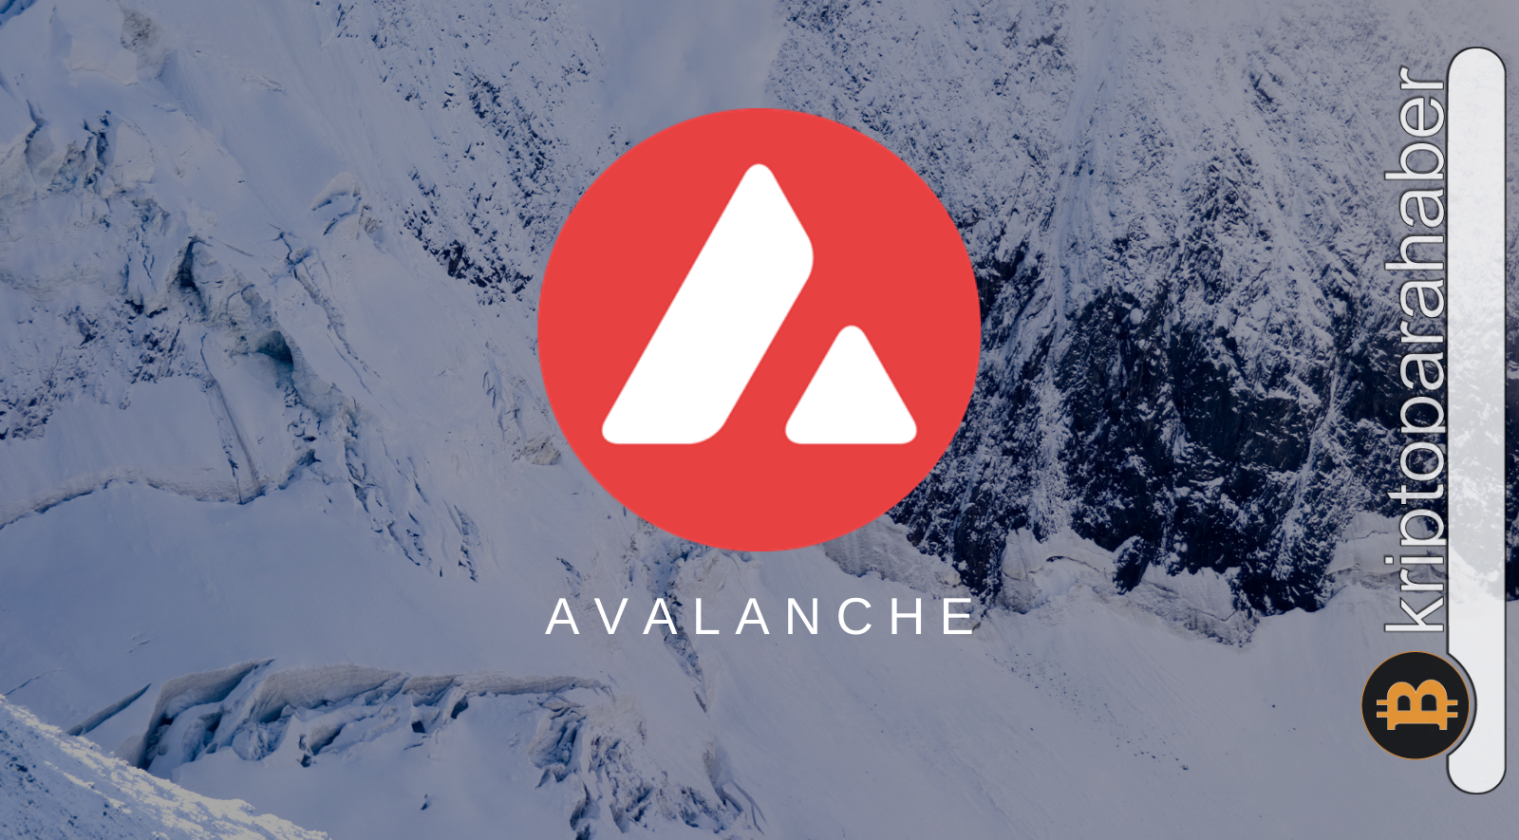 Kurumsal yatırımcıların gözü Avalanche'nin üzerinde! Büyük girişler görüldü